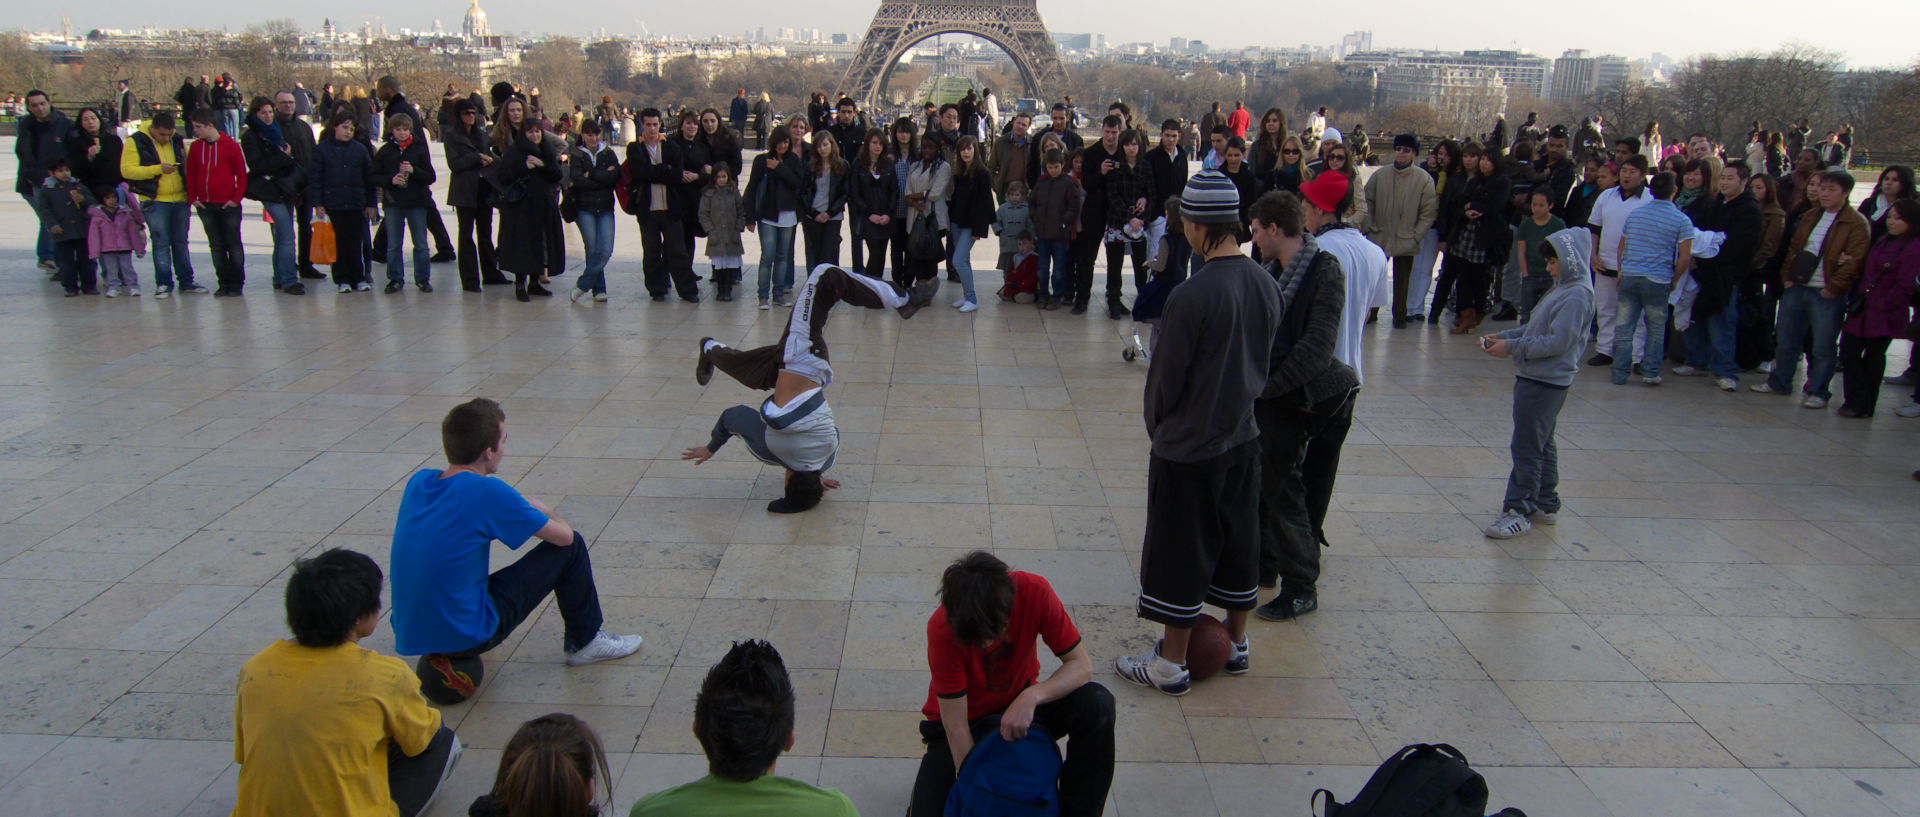 Mercredi 25 février 2009, 16:15, parvis des Droits de l'Homme, au Trocadéro, à Paris.